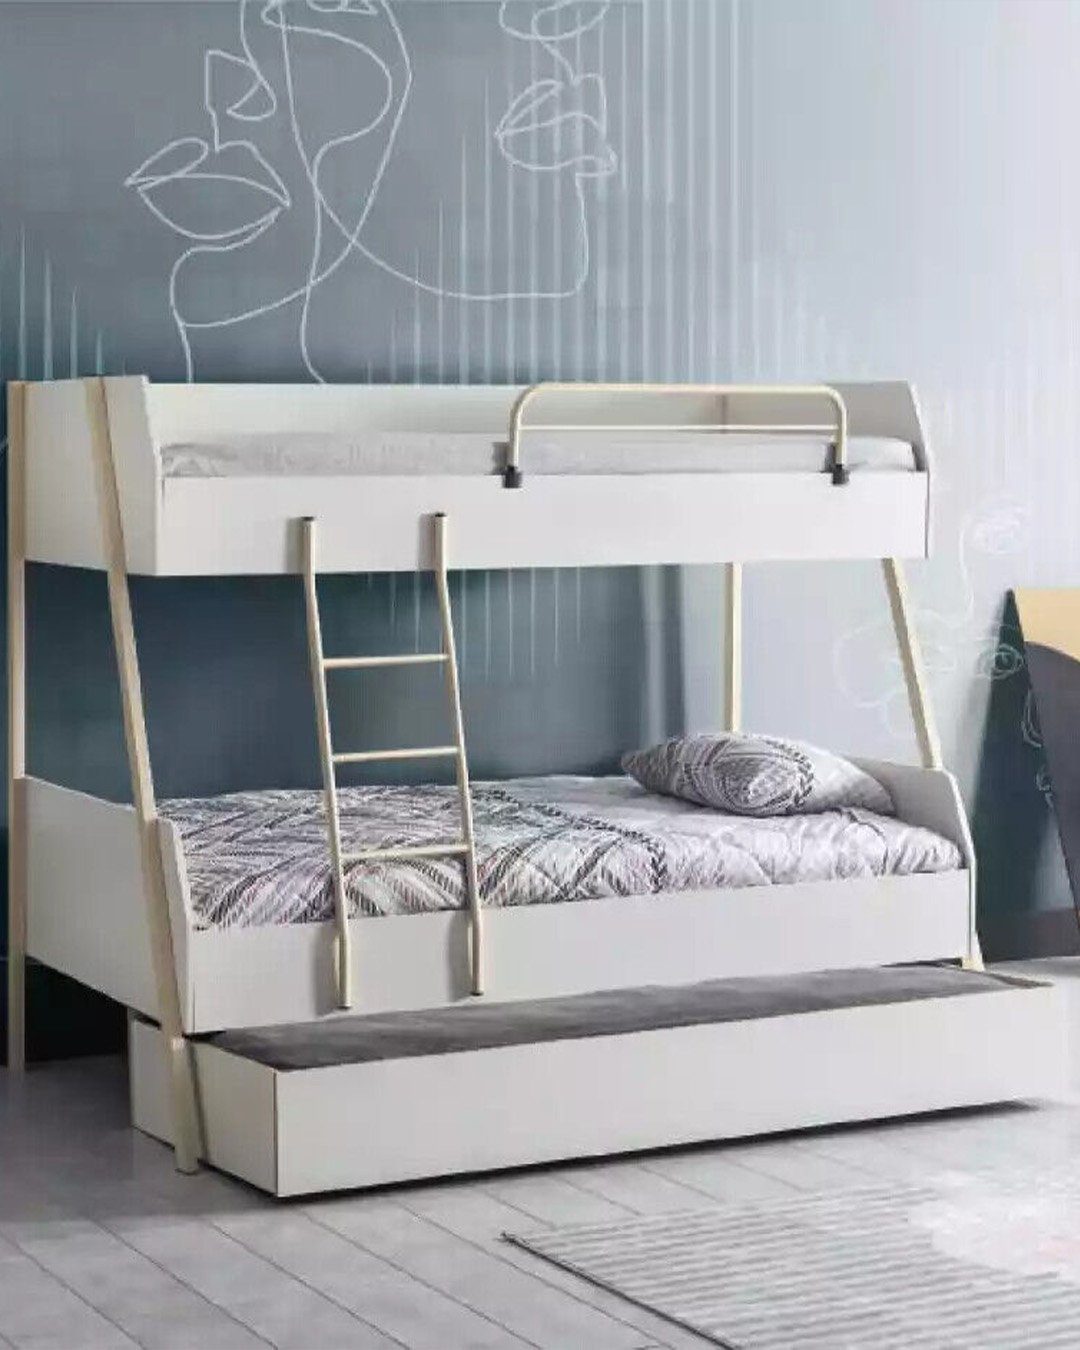 JVmoebel Modernes Etagenbett, Design Kinderbett Kinderzimmer Bett Weiß Jugendbett